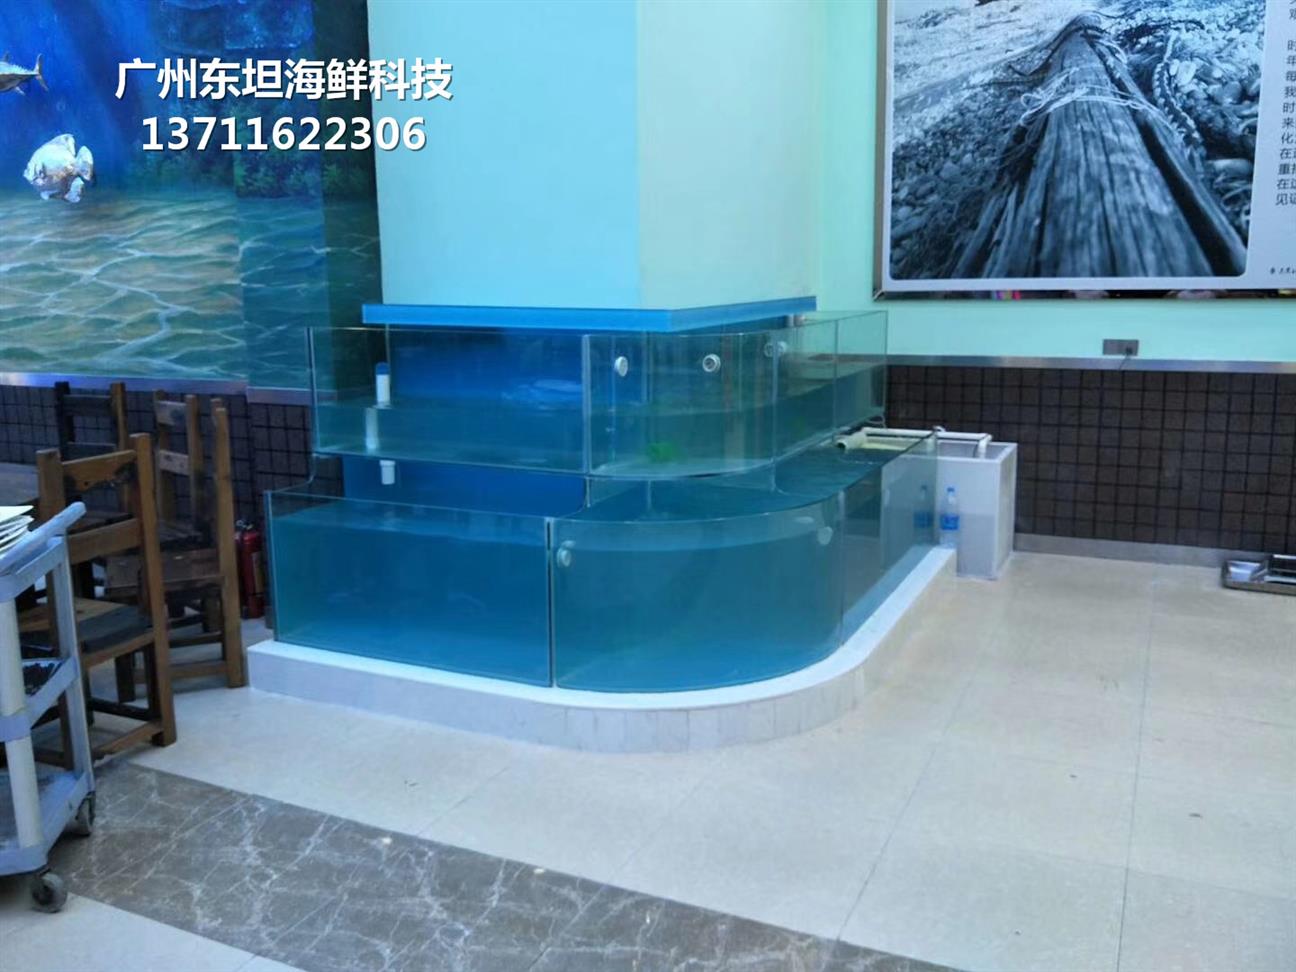 广州海珠玻璃海鲜池制冷机